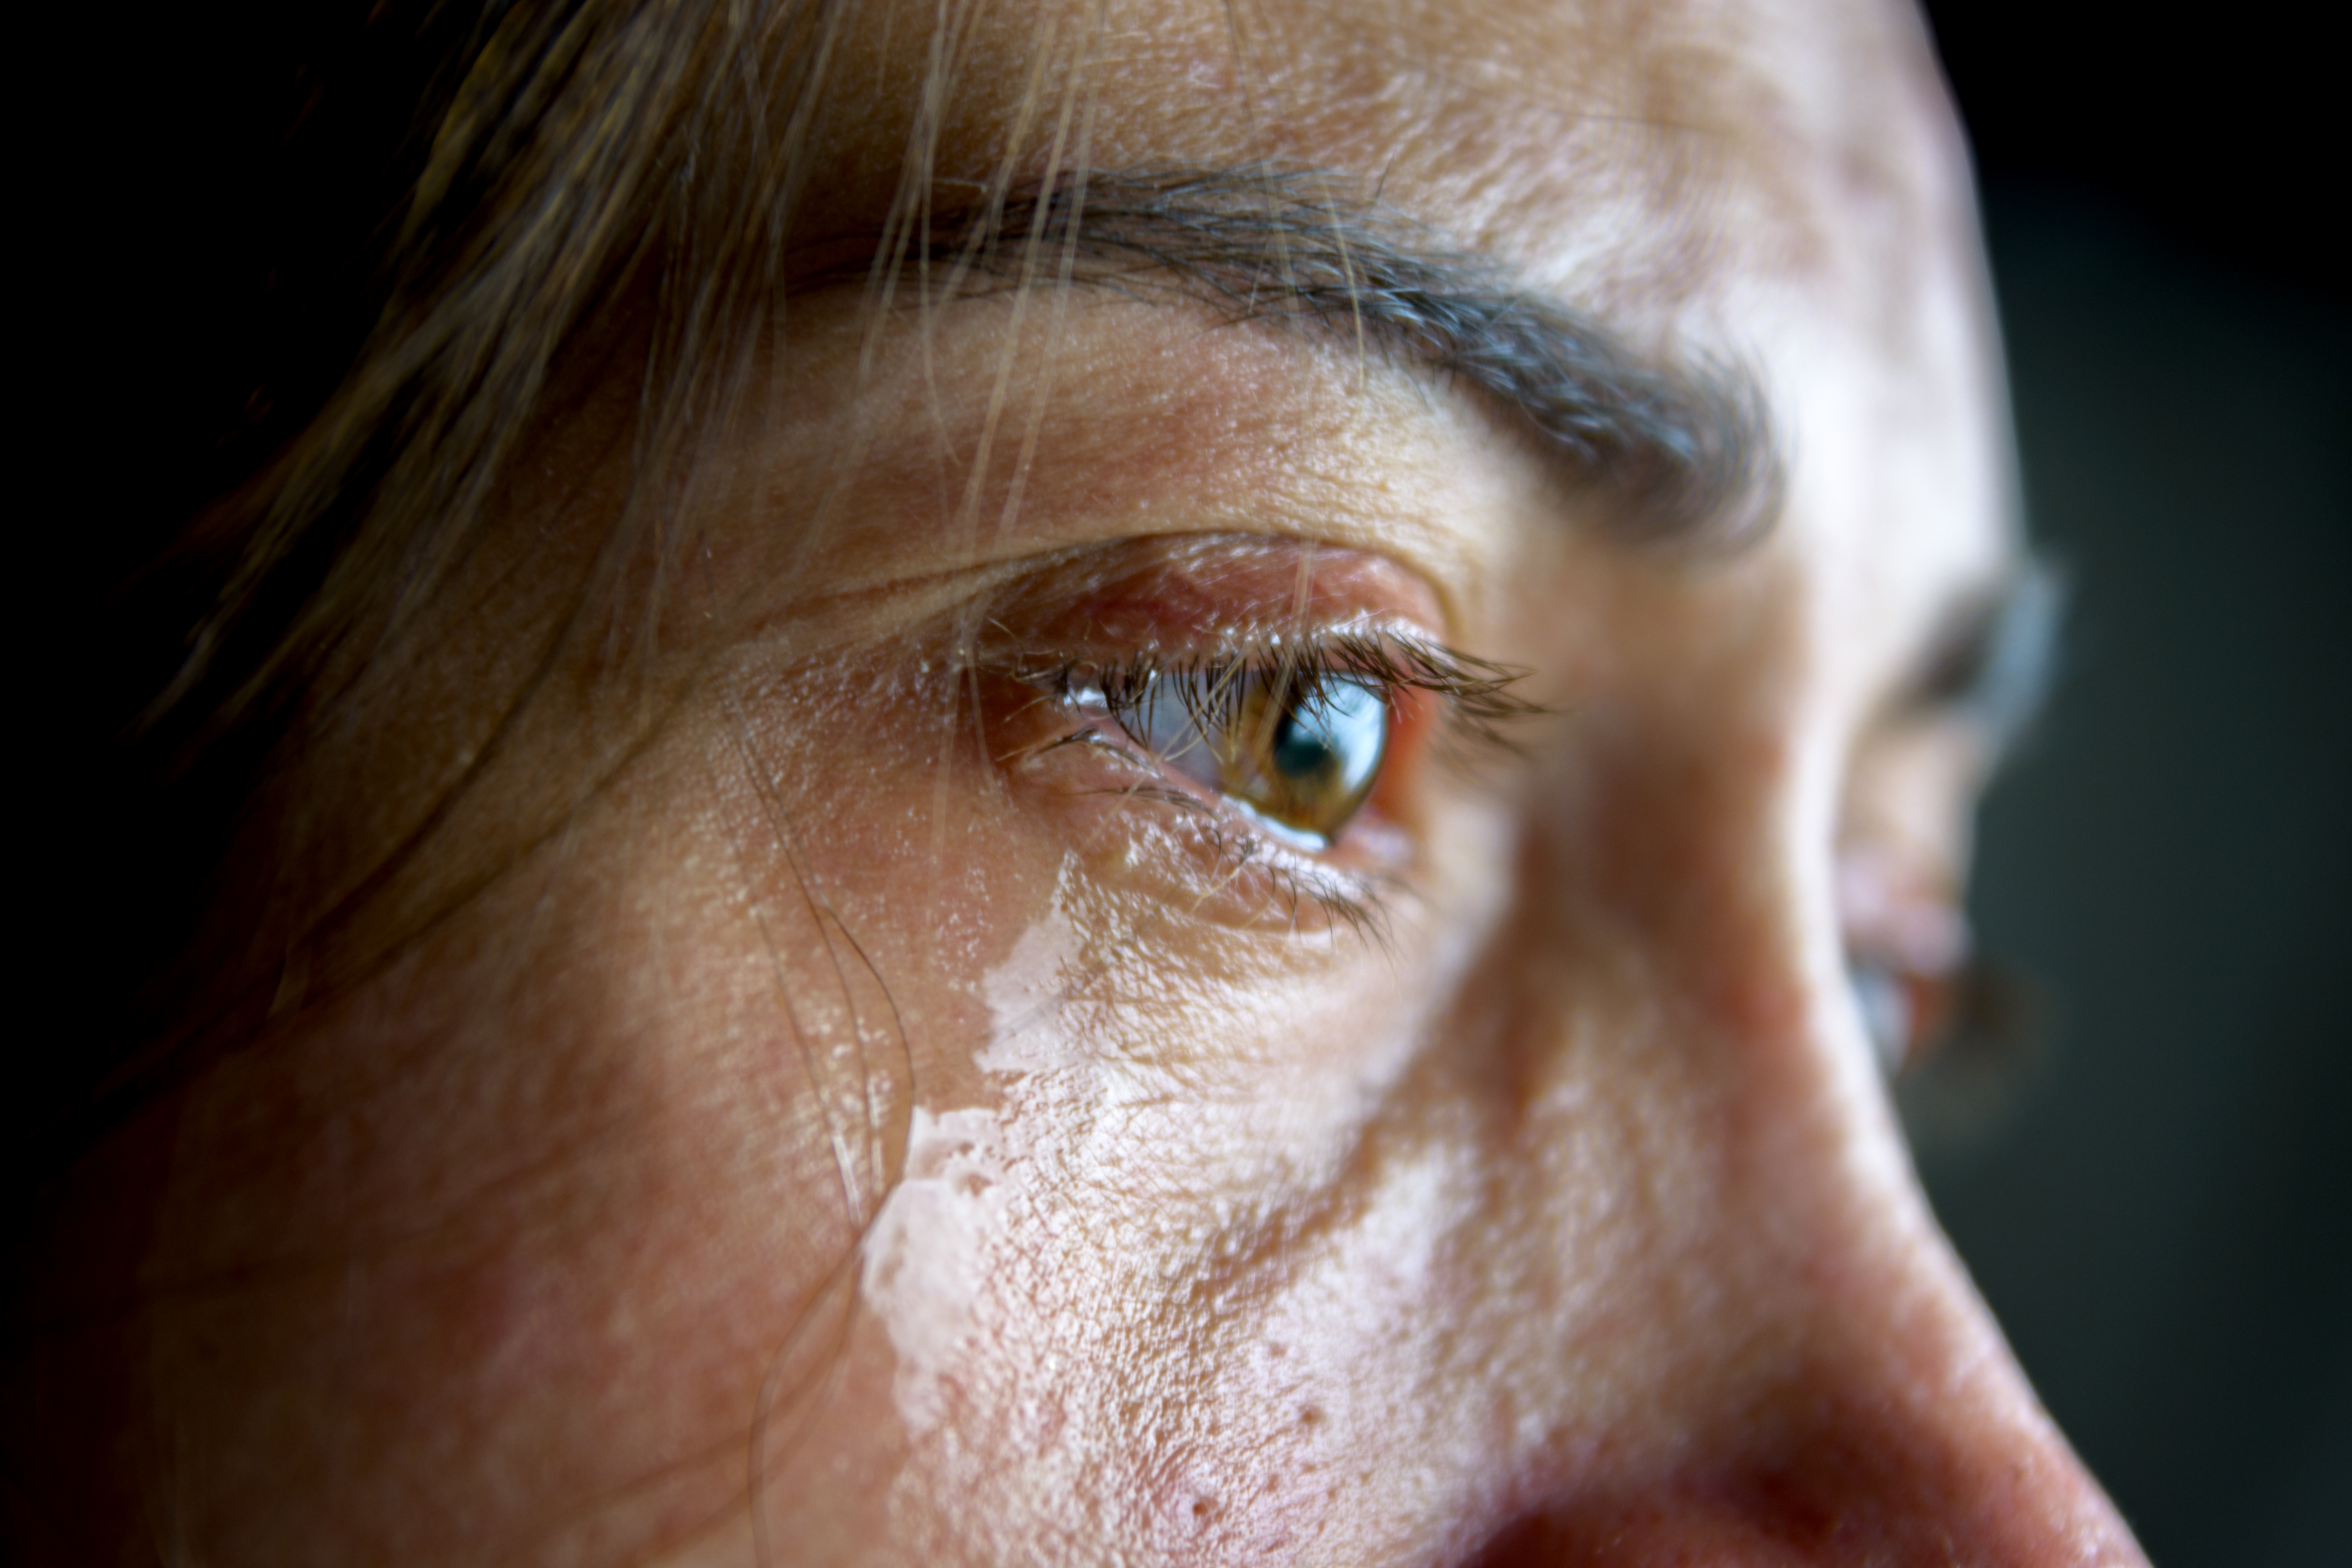 La mujer está llorando | Fuente: Shutterstock